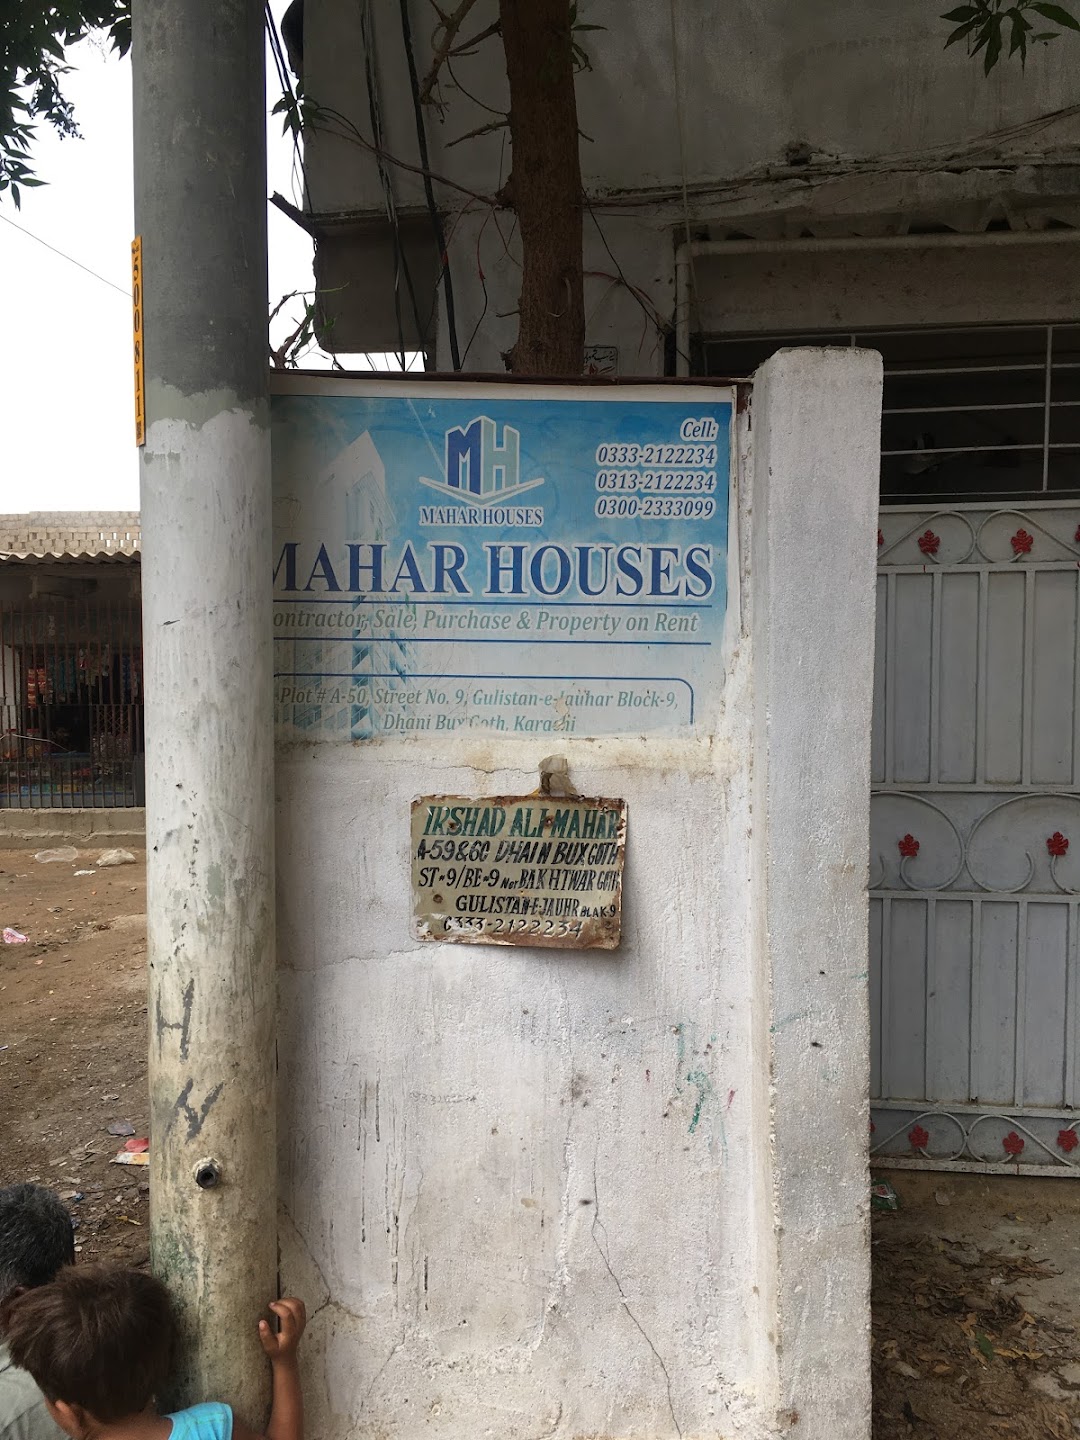 Mahar Houses irshad ali mahar